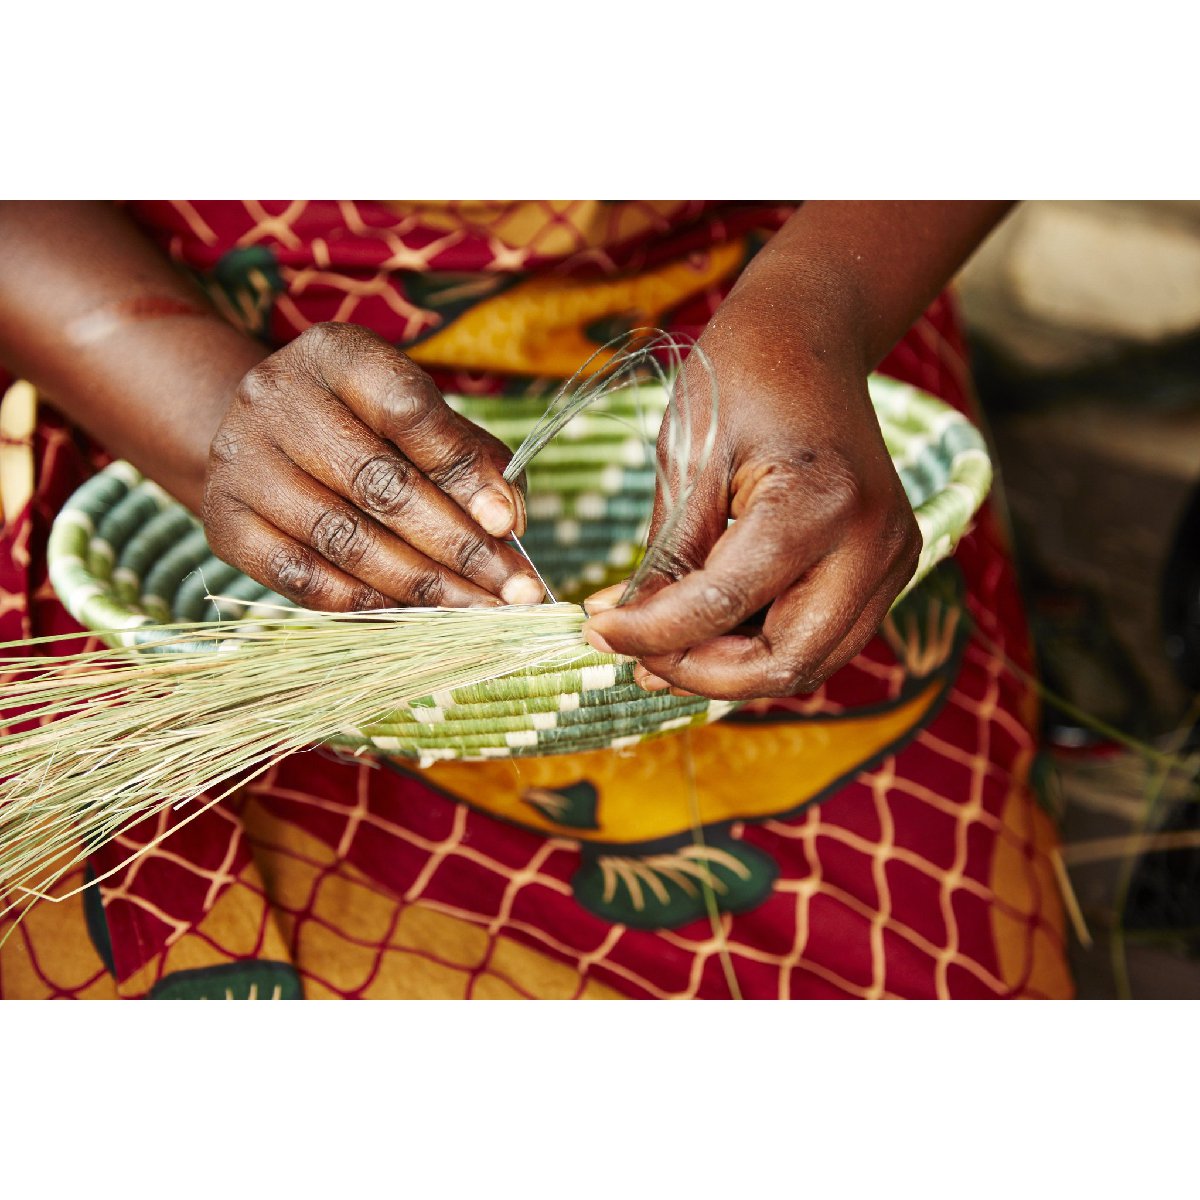 African woven bowls - weaving